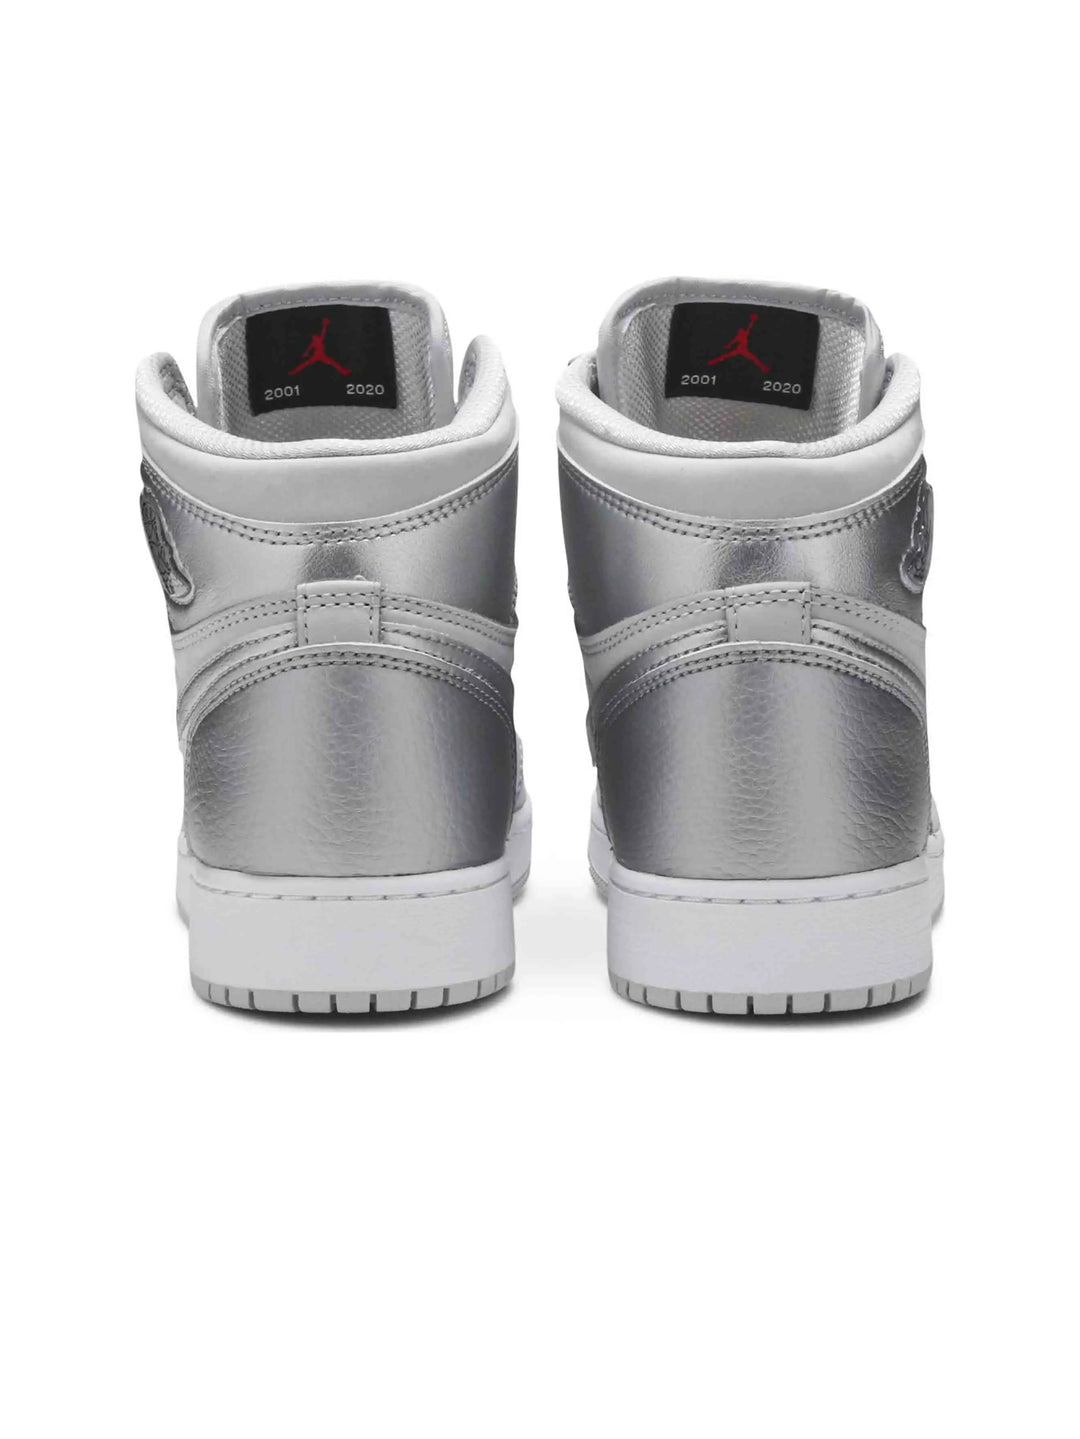 Nike Air Jordan 1 Retro High CO Japan Neutral Grey (GS) Prior